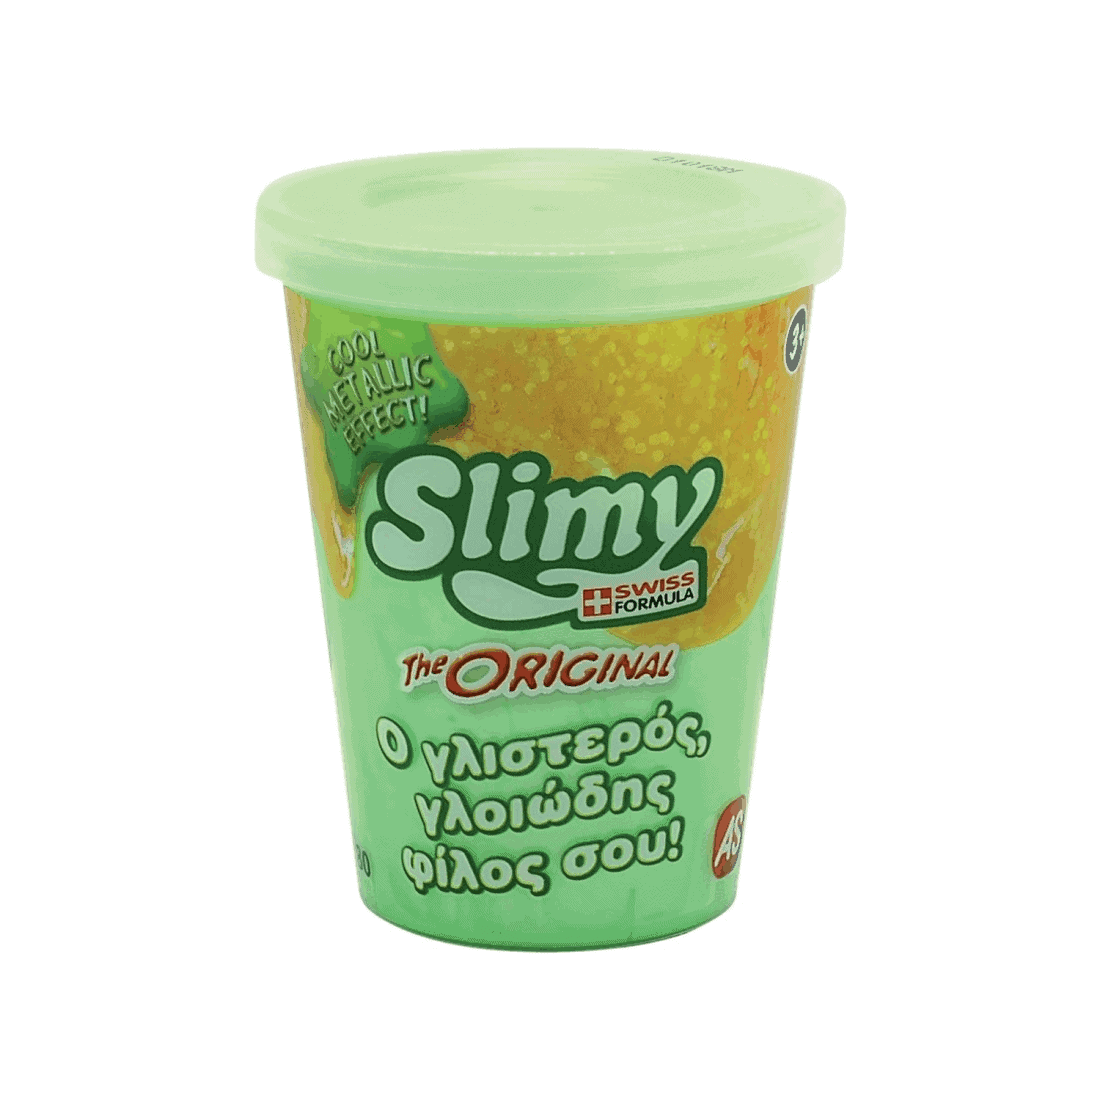 Χλαπατσα Original Slimy Metallic - Λαχανί